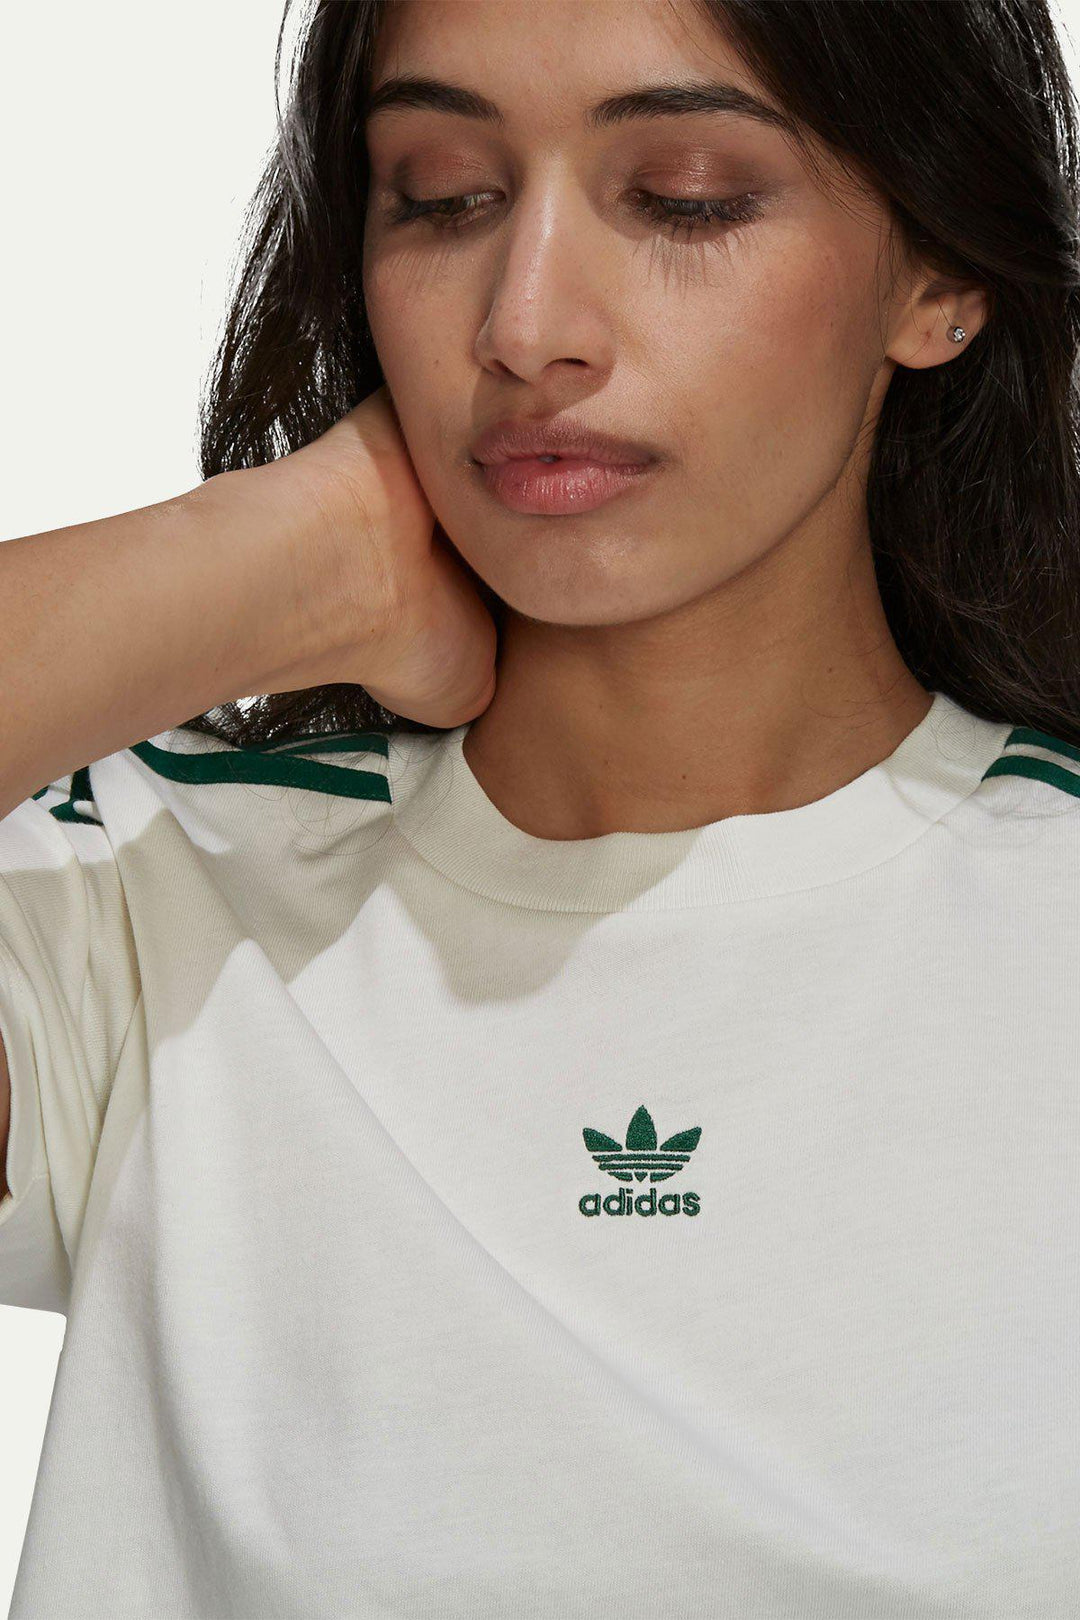 חולצת אדידס בצבע לבן - Adidas